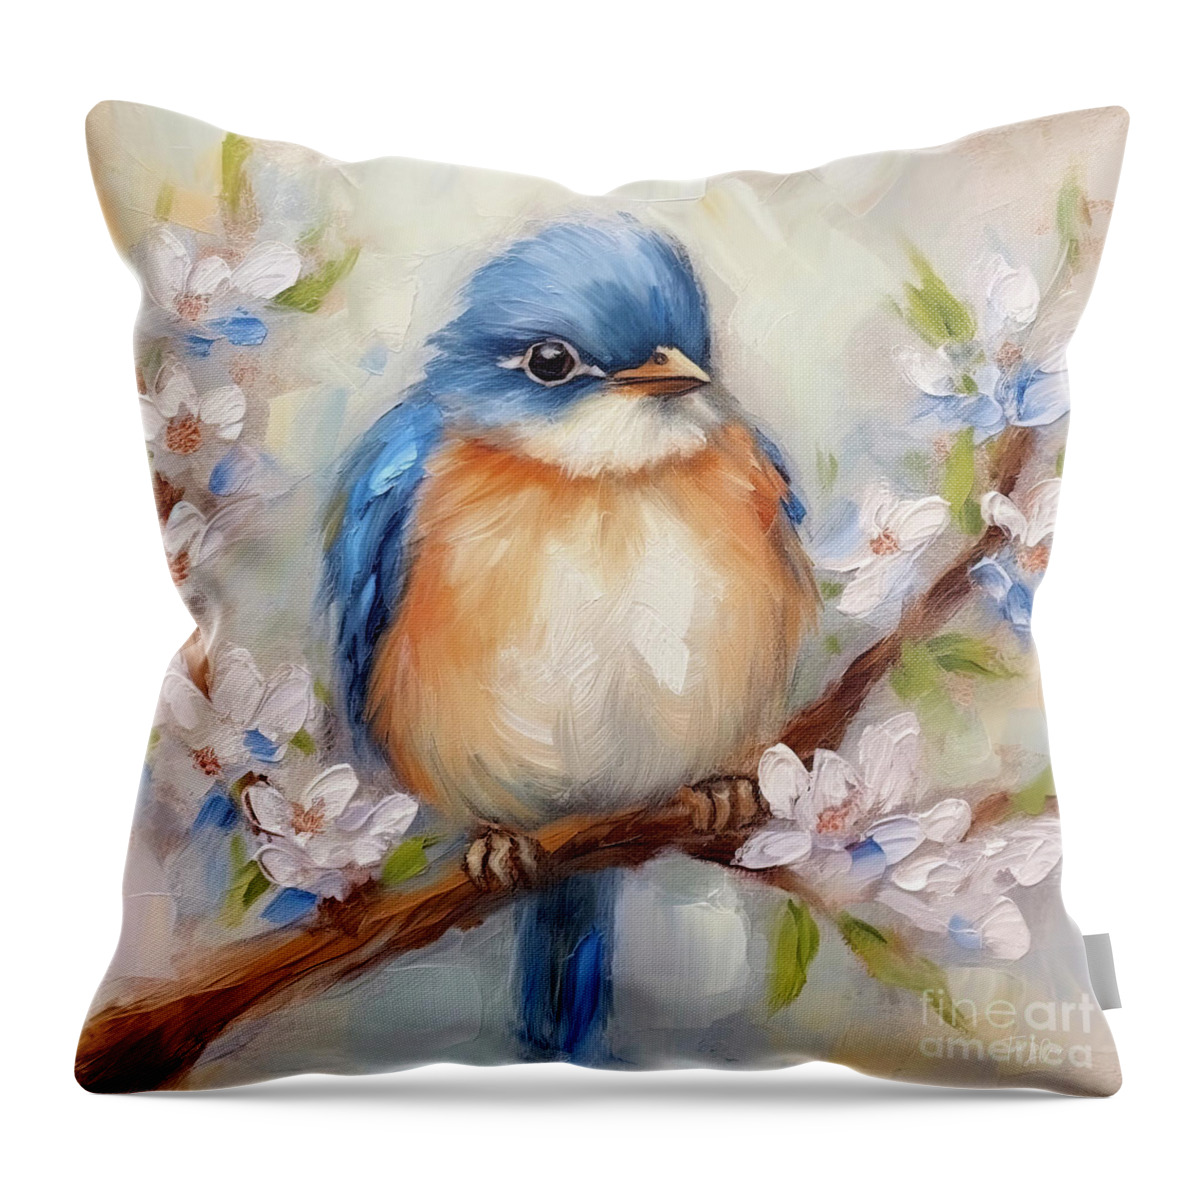 Bluebird Throw Pillow featuring the painting Plump Little Bluebird by Tina LeCour